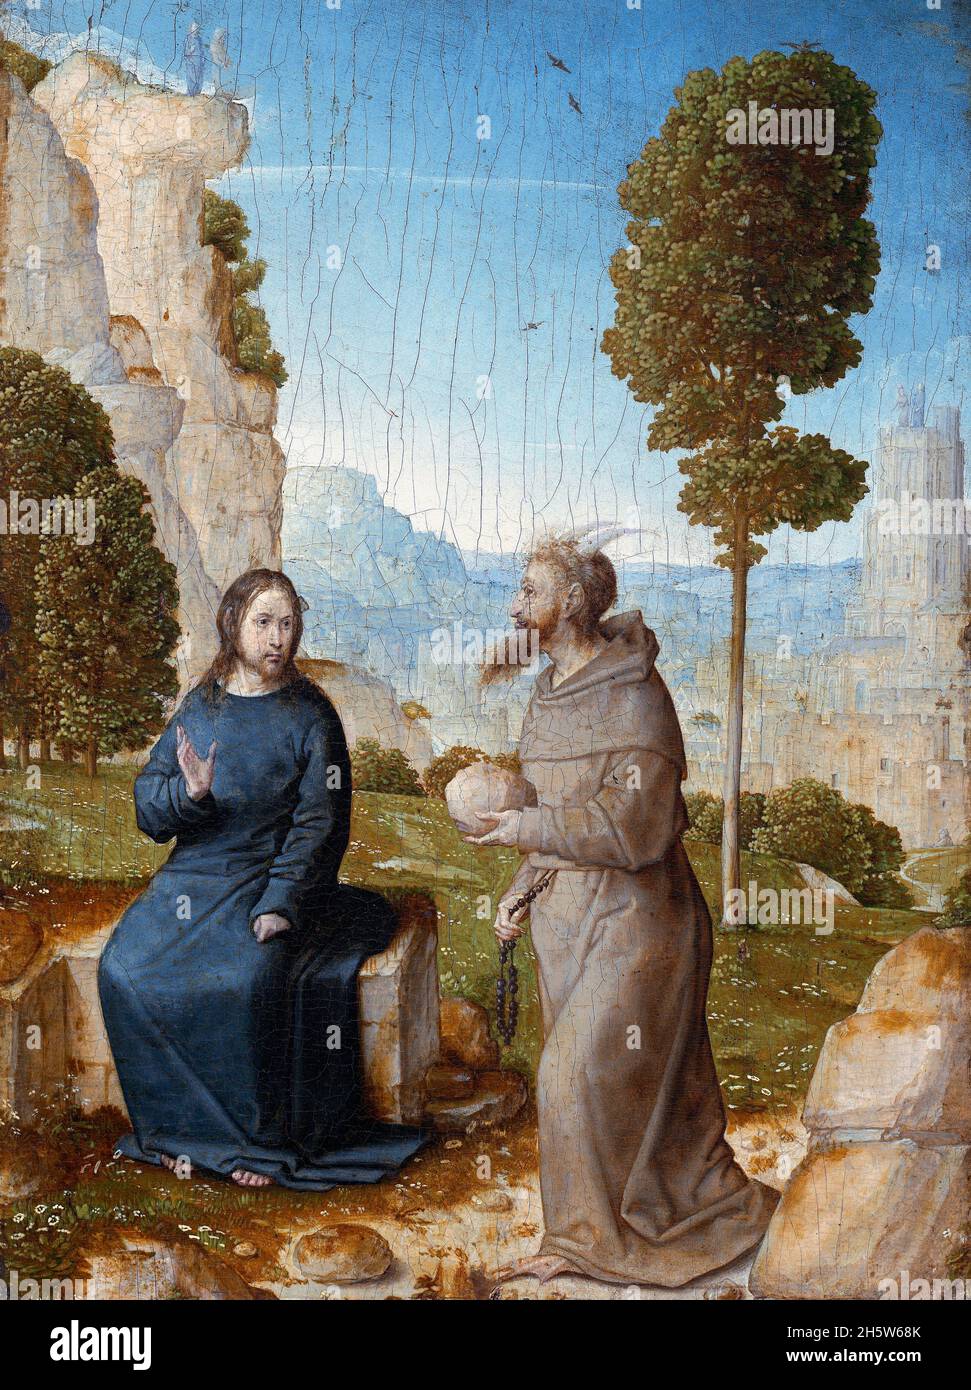 La tentation du Christ par Juan de Flandes (Jean de Flandre : c.1460- c.1519), huile sur panneau, c.1500/04 Banque D'Images